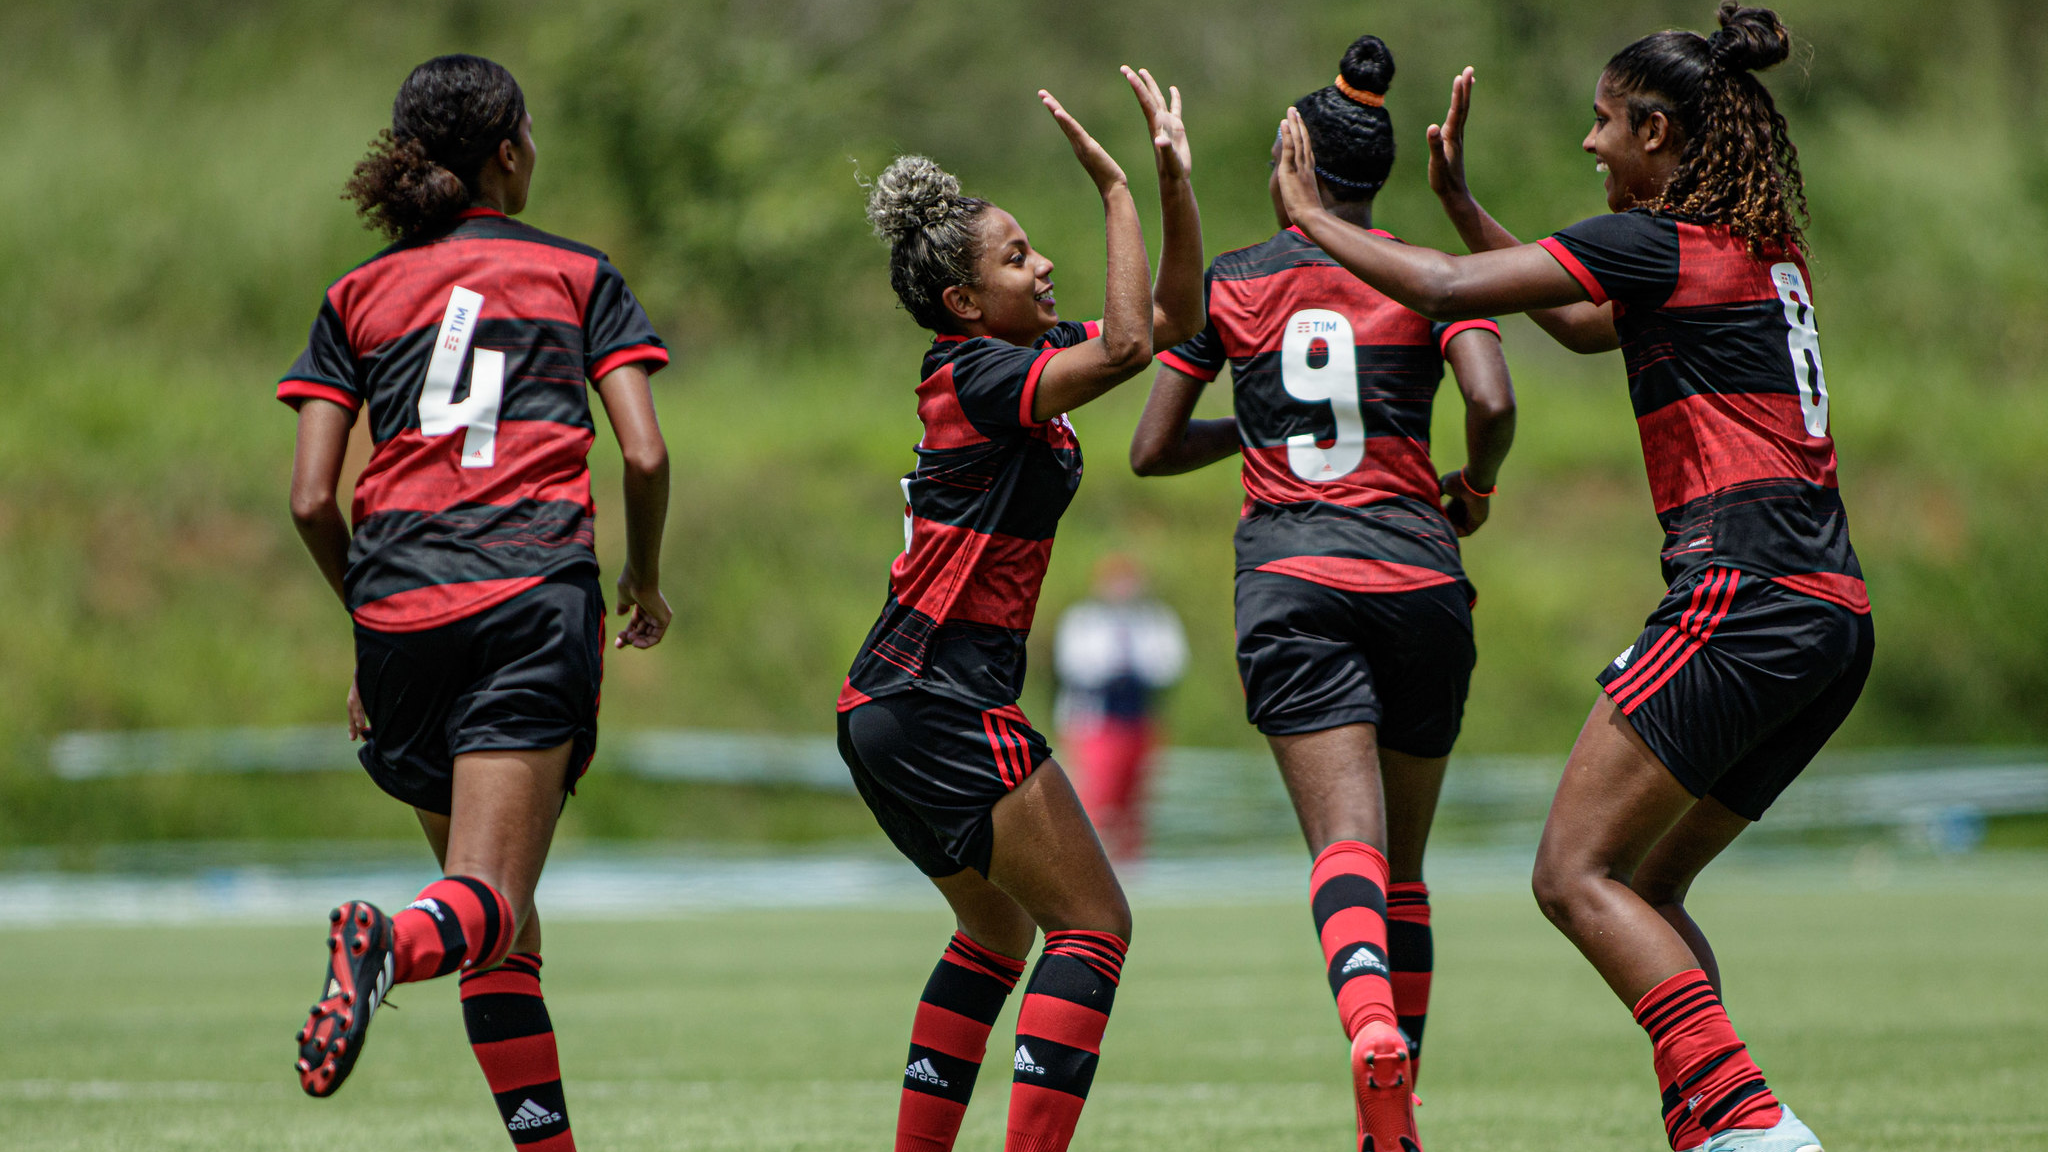 Flamengo vence e tira as chances de classificação do Fortaleza no Brasileirão Feminino Sub-18